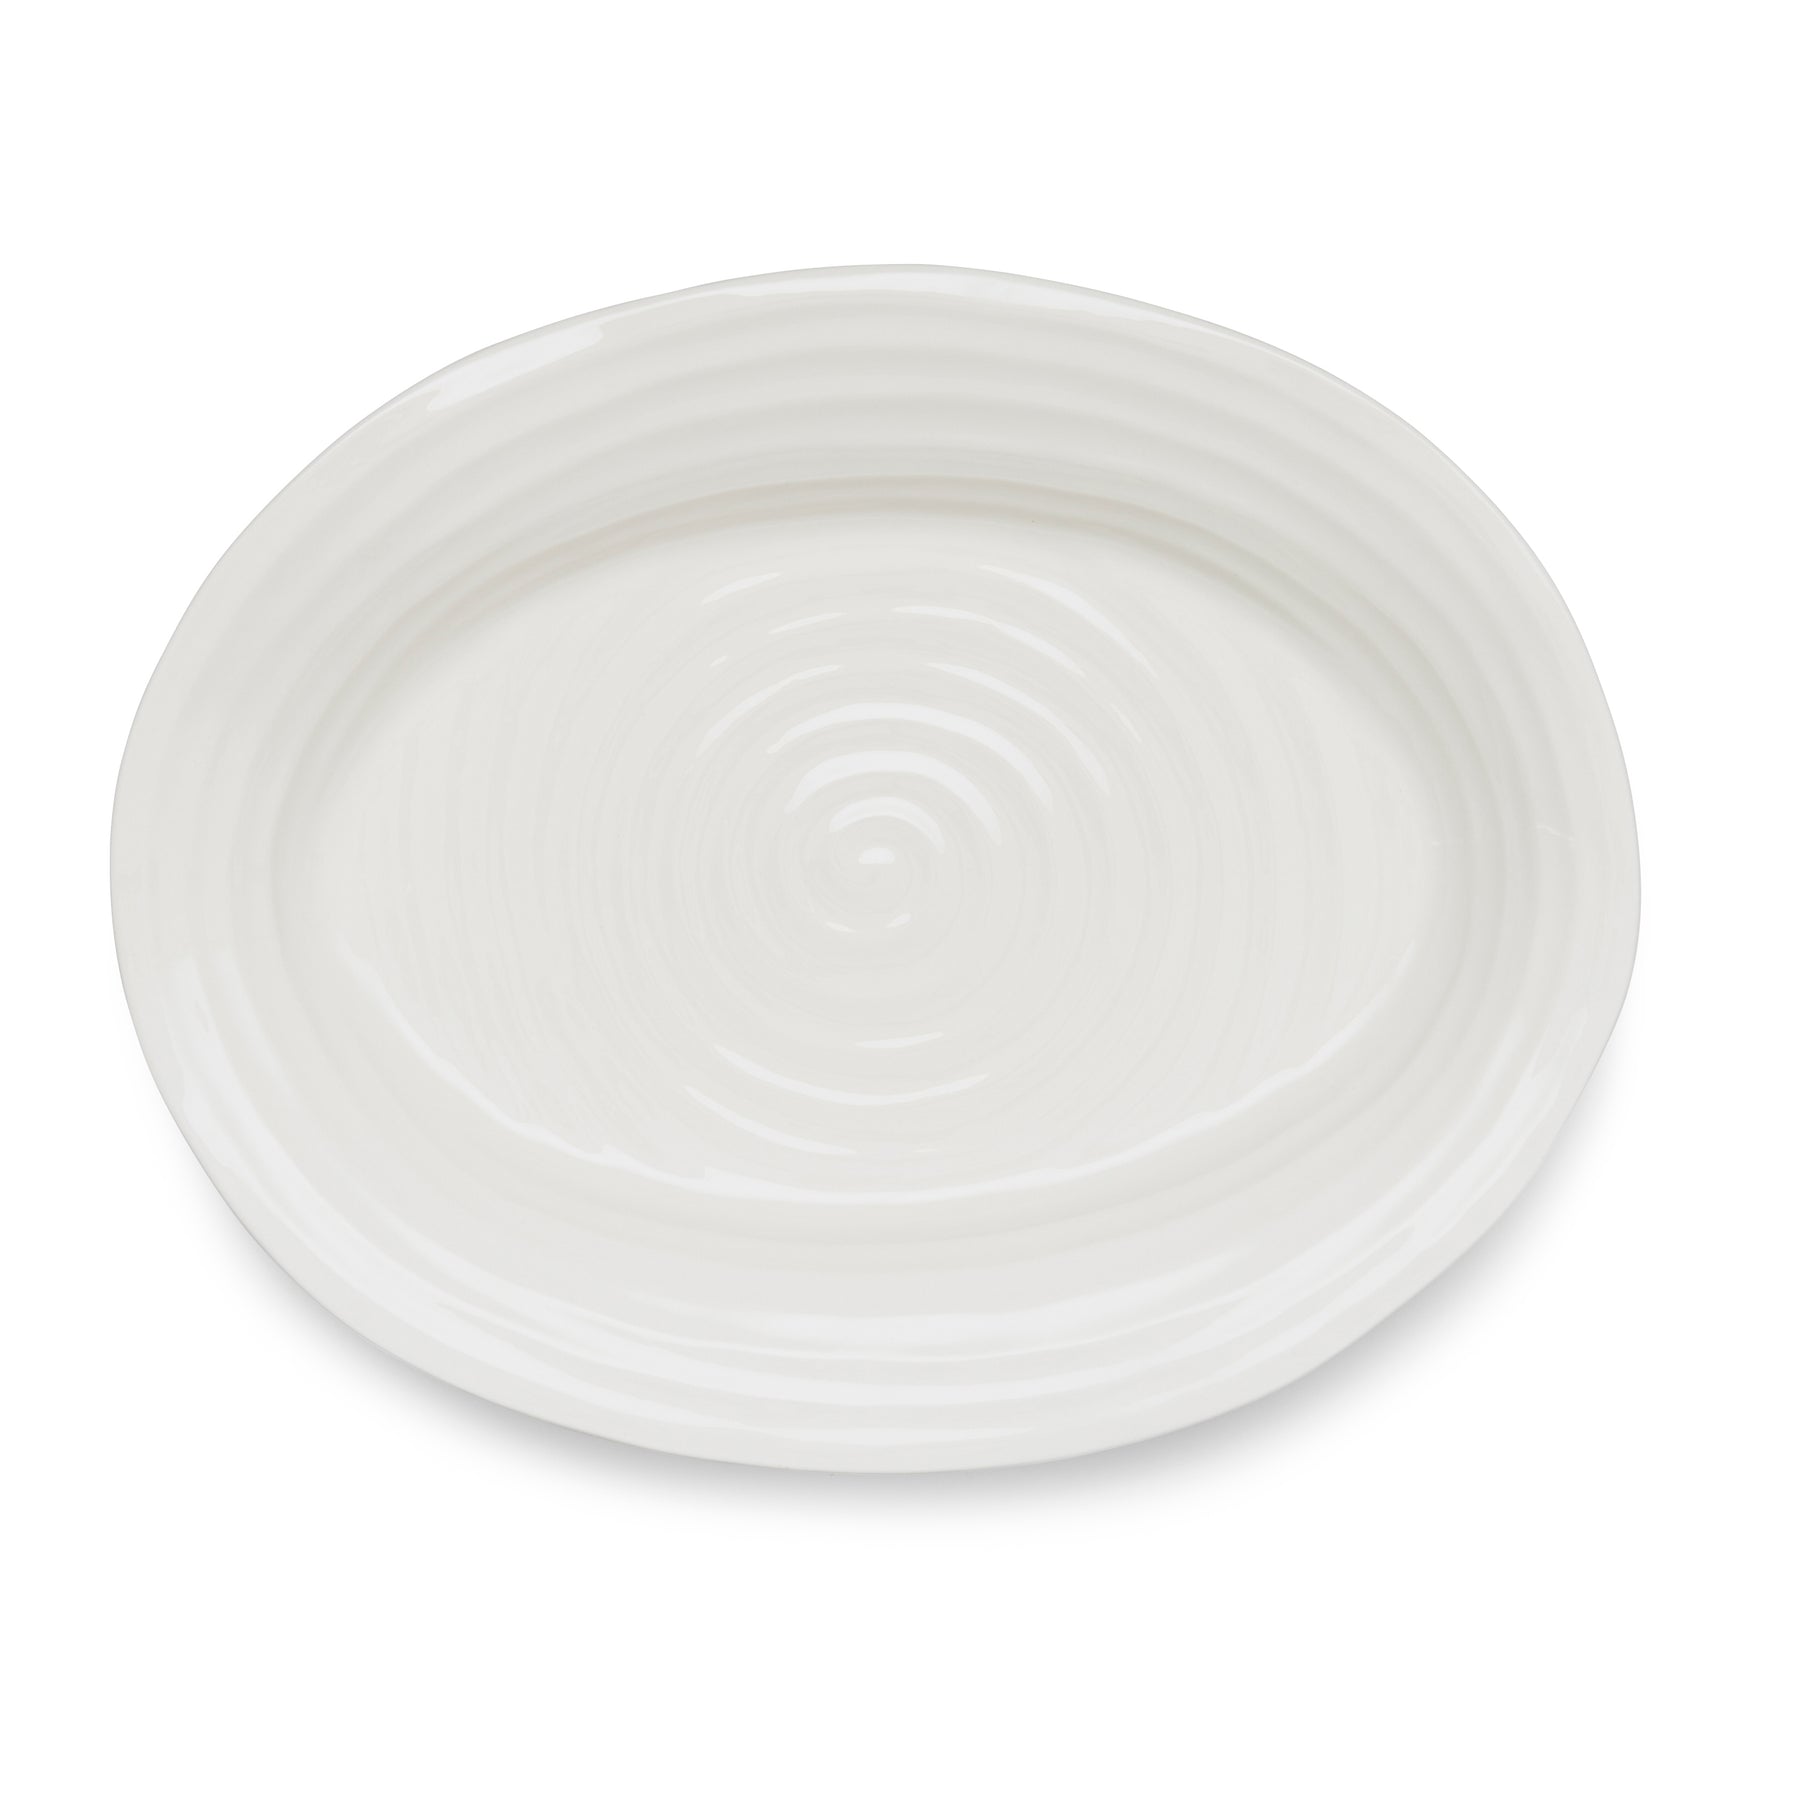 Portmeirion Sophie Conran White Medium Porcelain Oval Platter